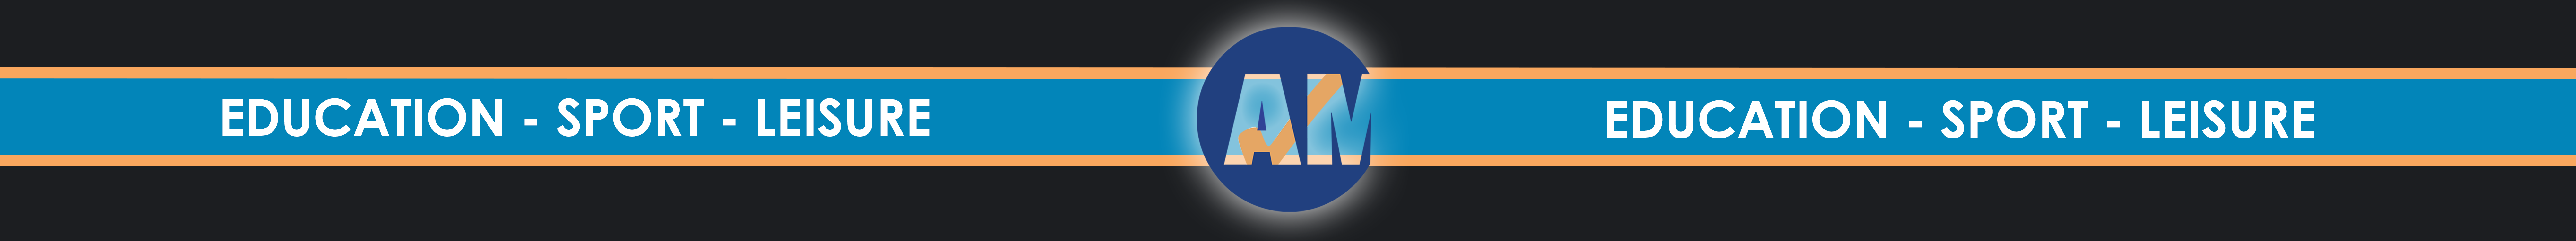 AMT Web Banner Test8